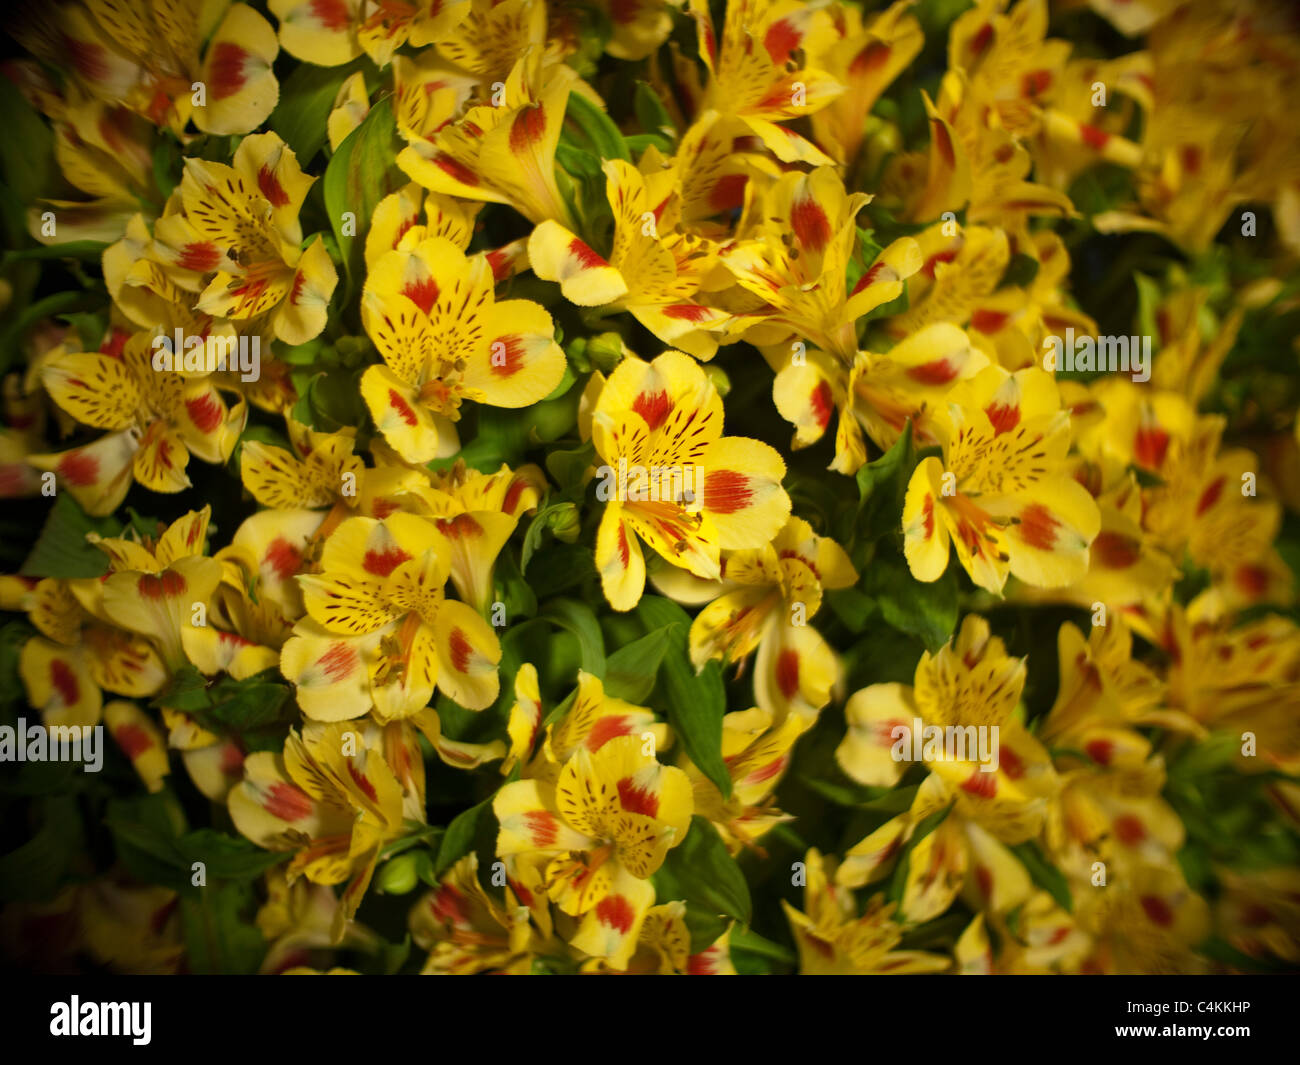 Affichage floral à l'Ecosse de jardinage Afficher Banque D'Images